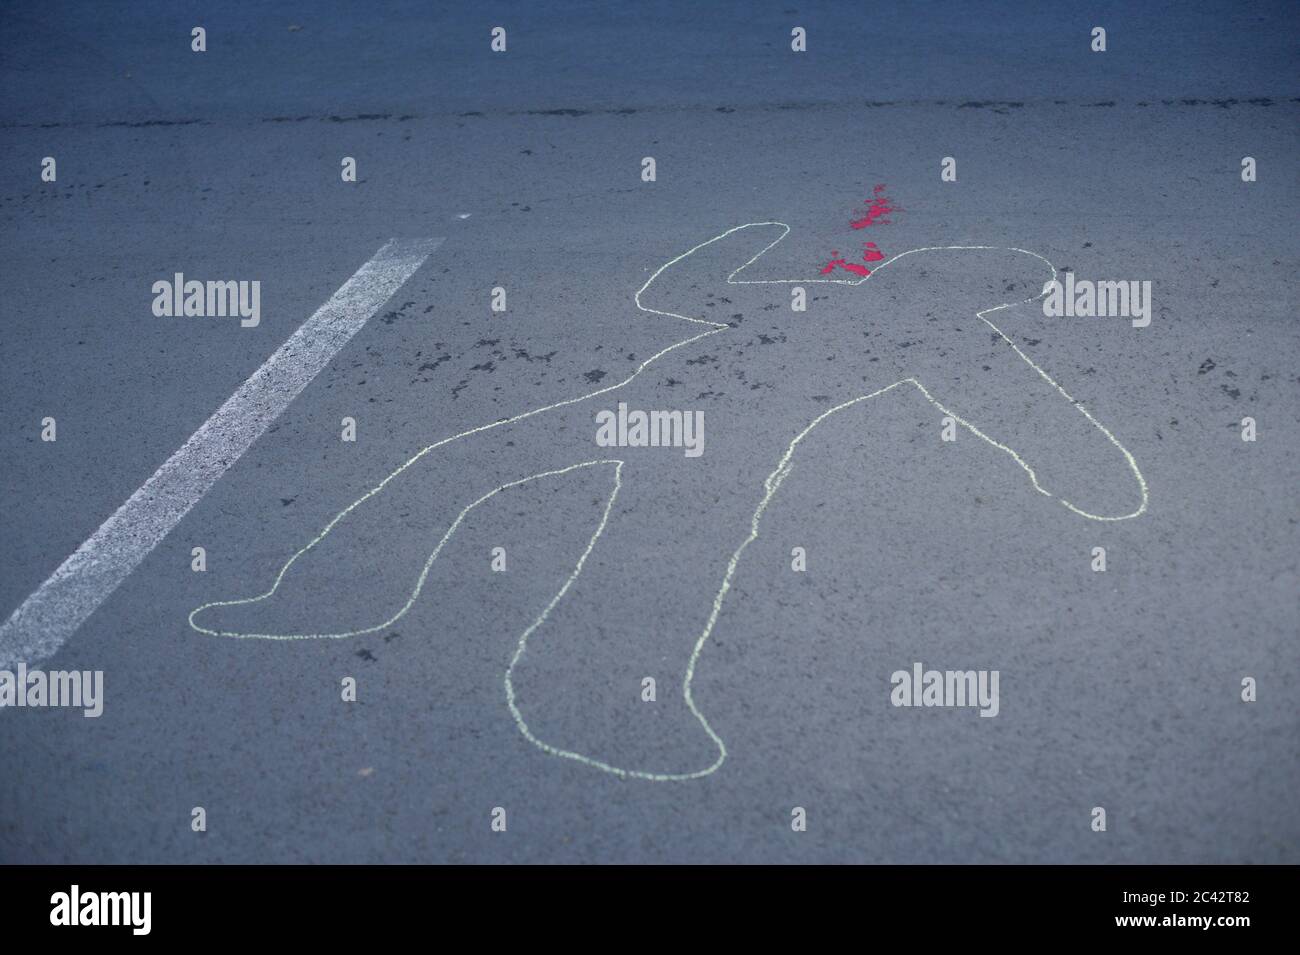 Plan d'une personne tirée dans la craie sur l'asphalte - scène de crime - meurtre Banque D'Images